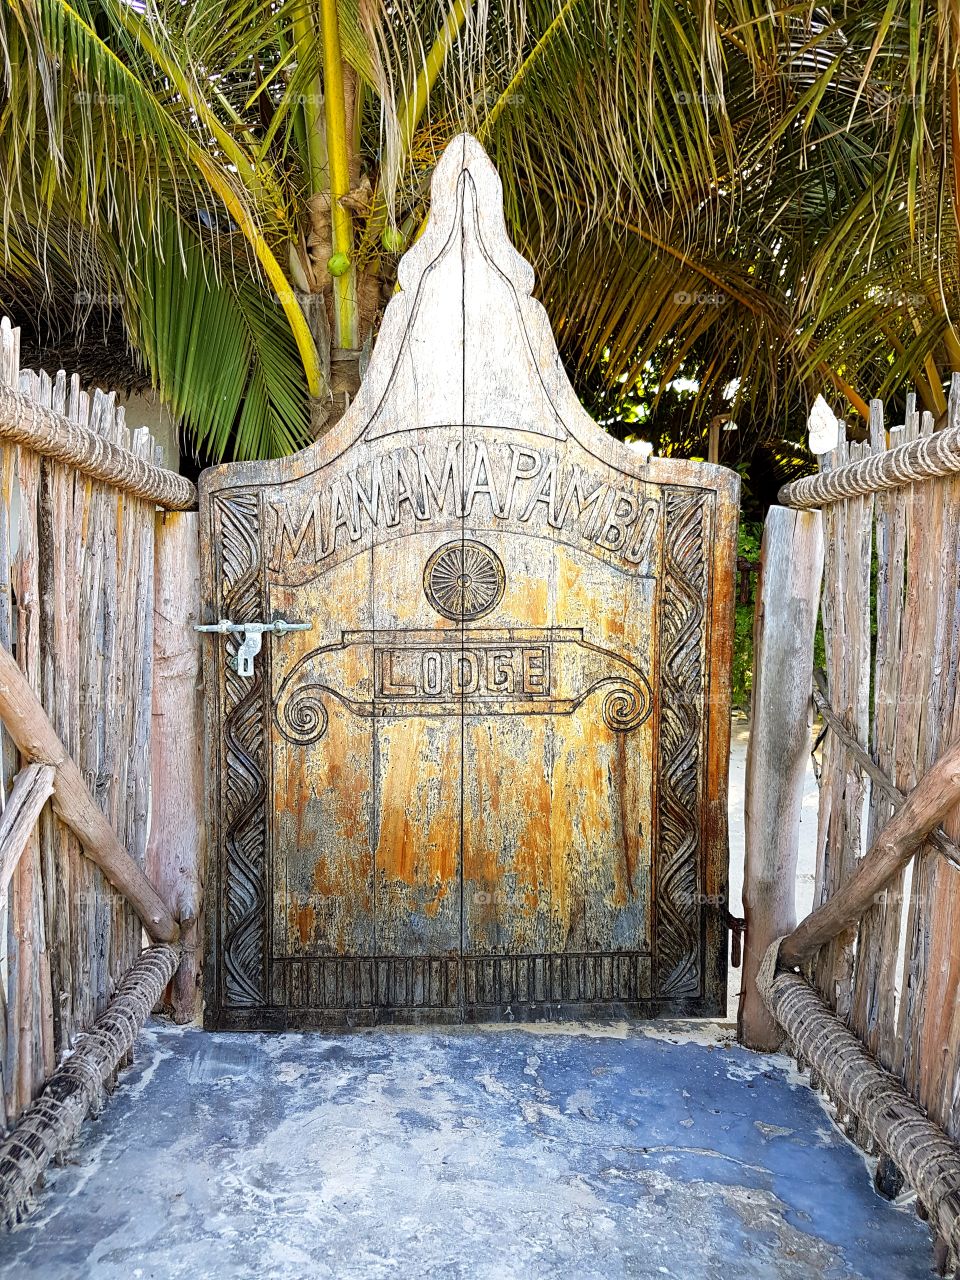 Ocean Gateway - Zanzibar